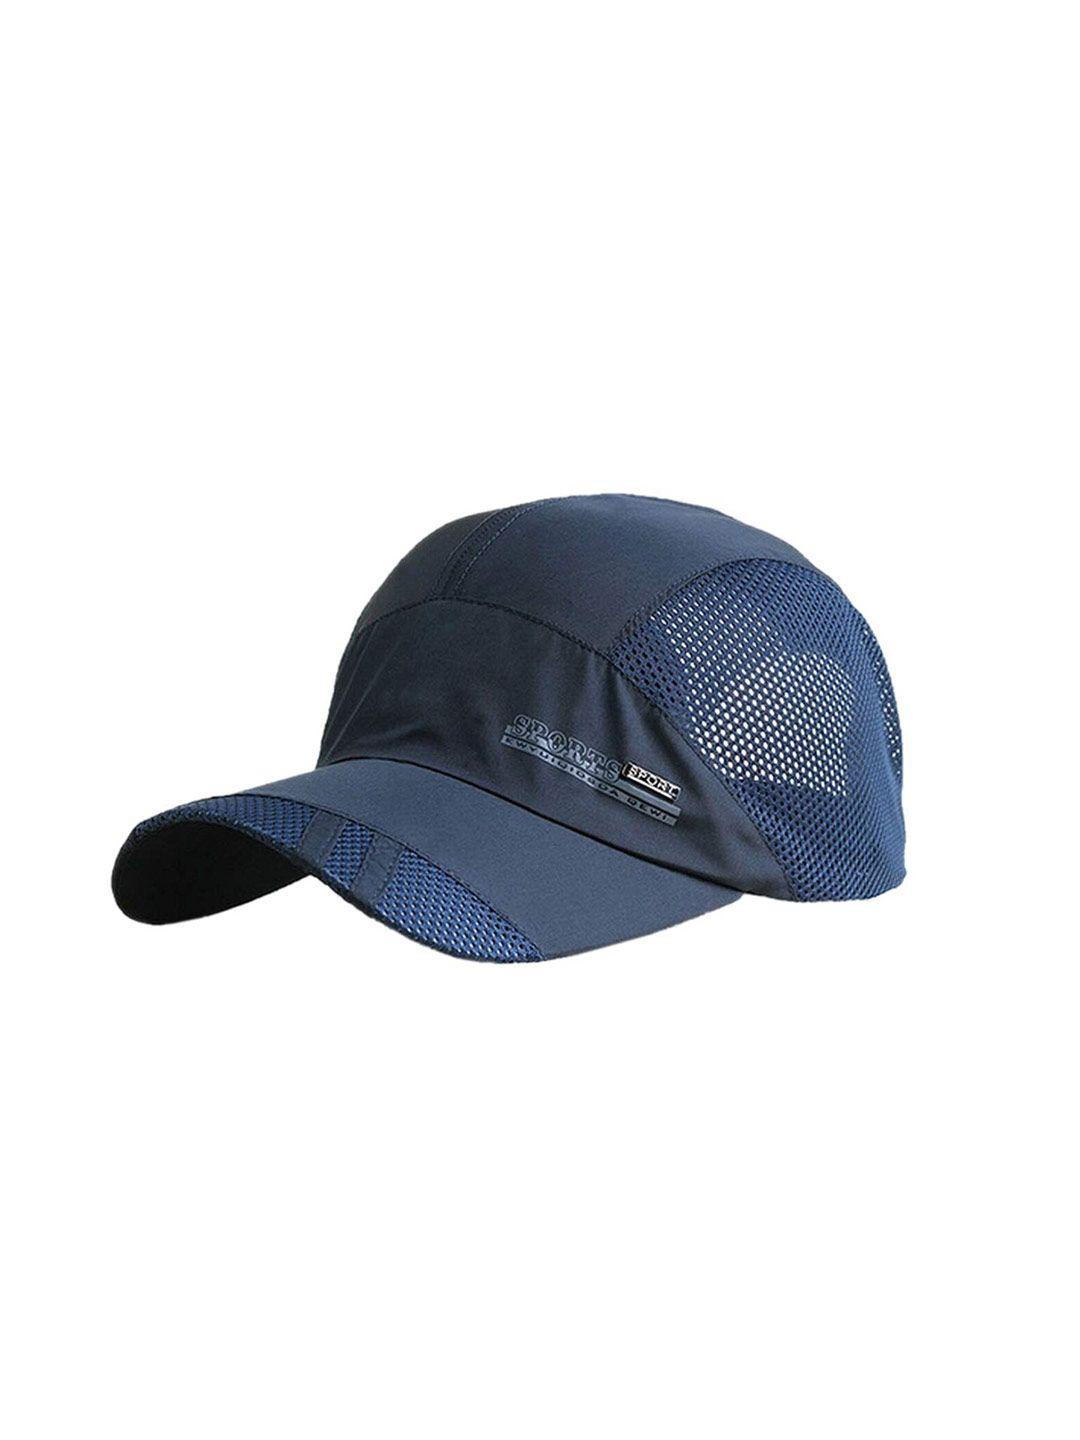 isweven self design lightweight baseball cap